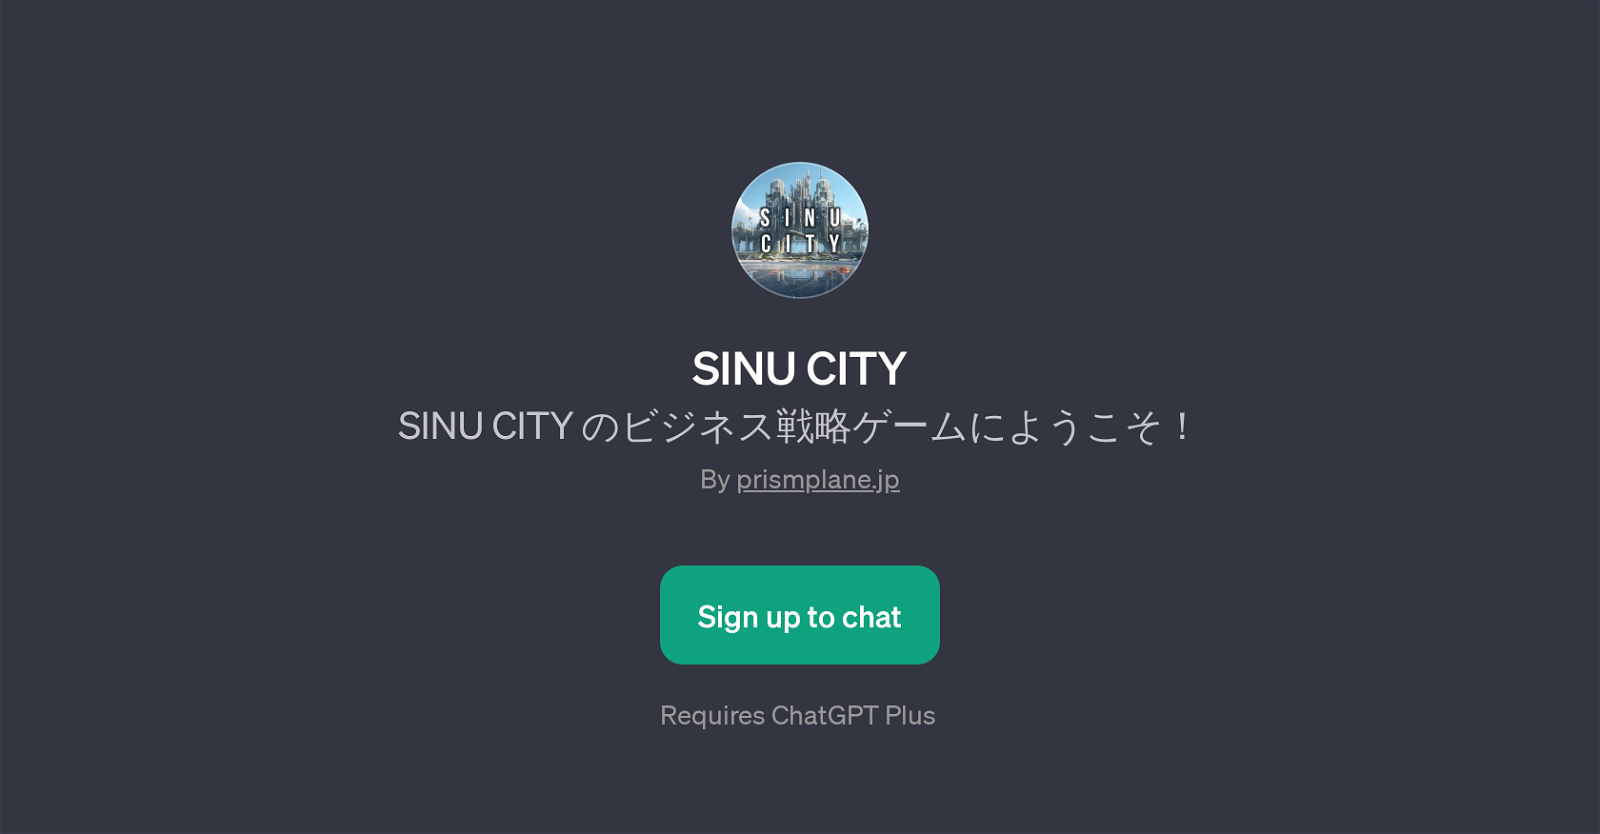 SINU CITY website